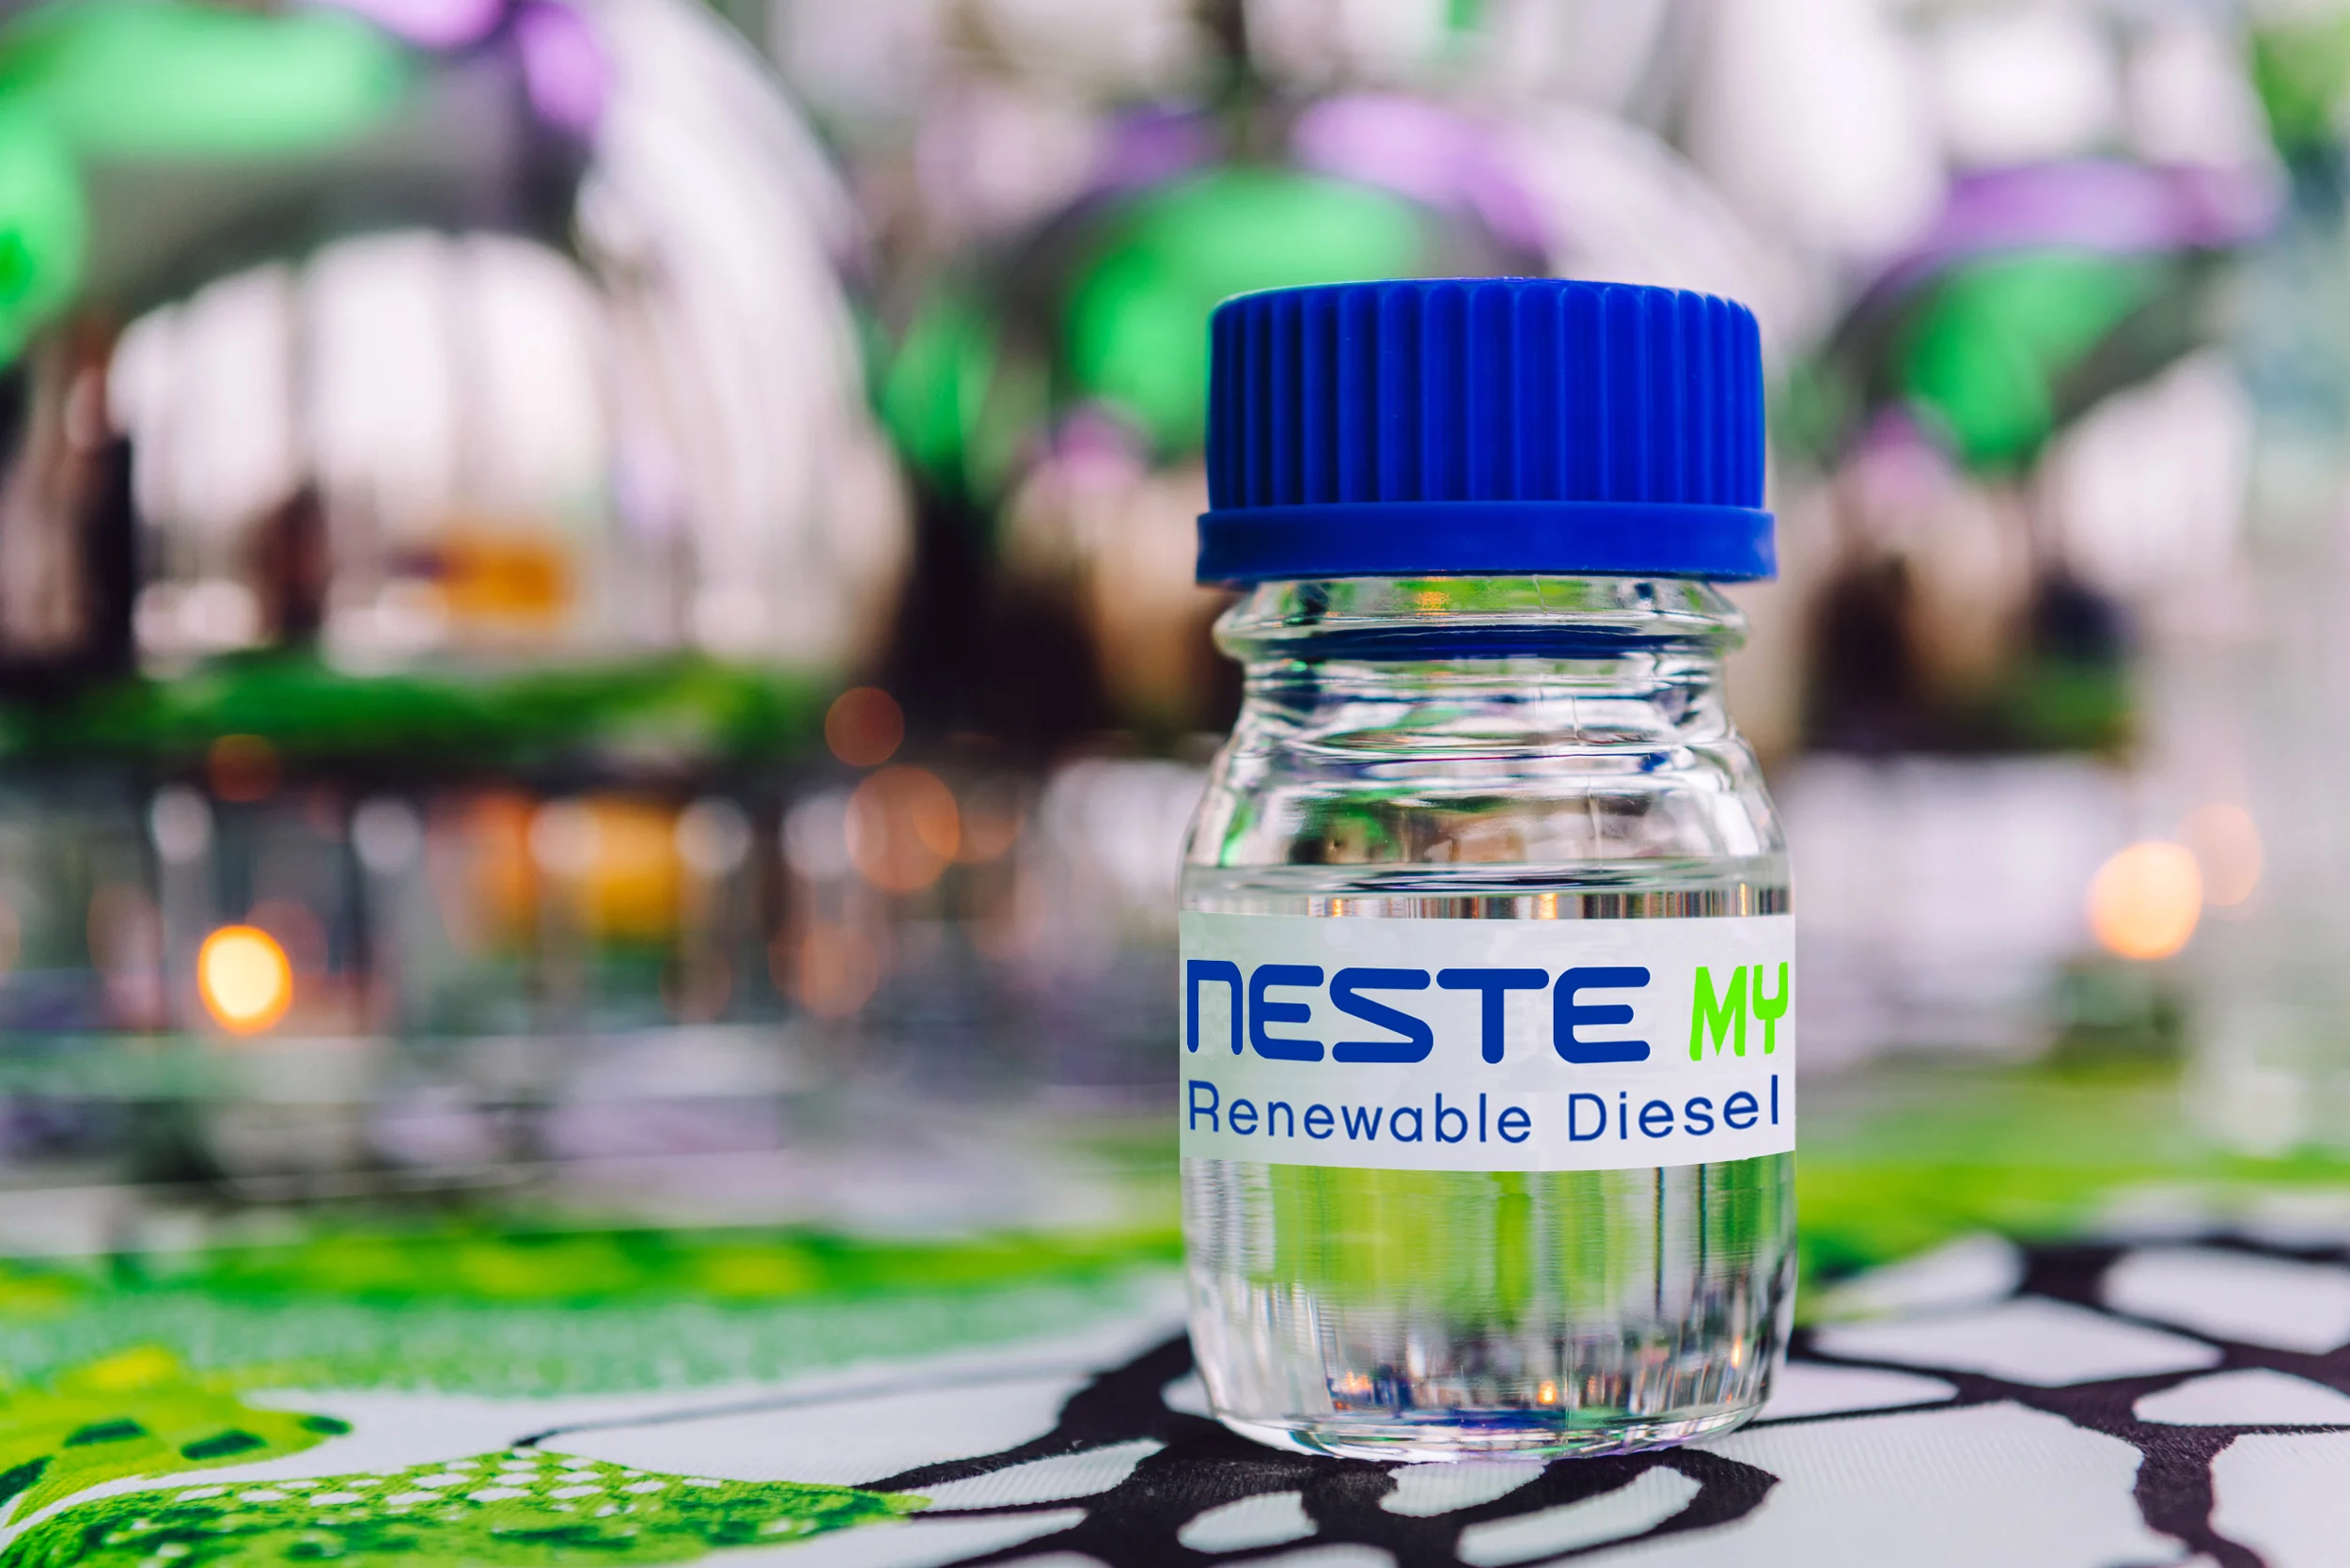 Bottle of Neste My Renewable Diesel